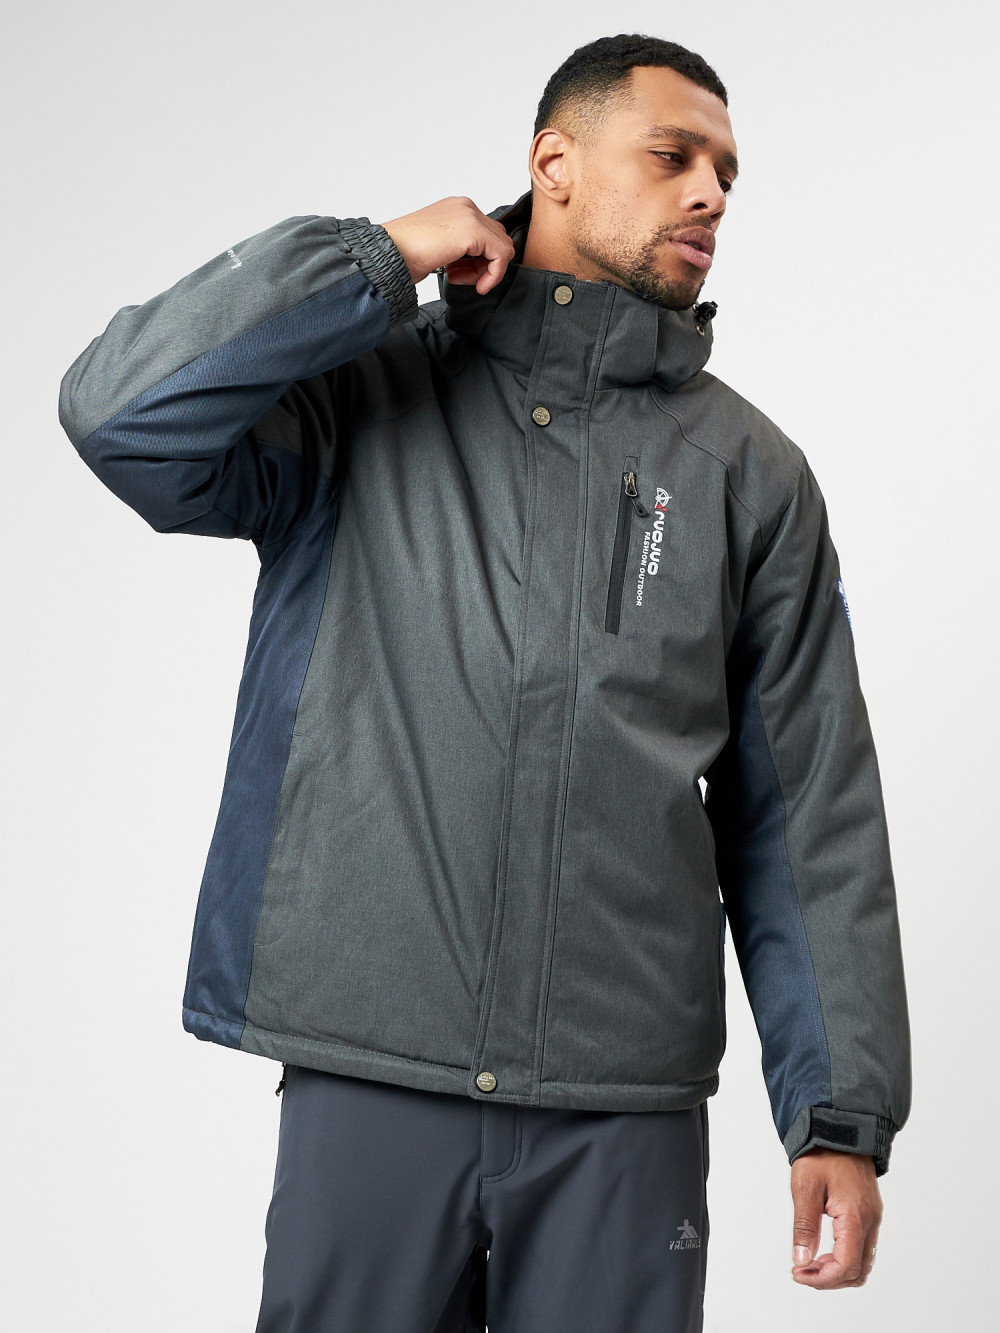 Купить оптом Спортивная куртка мужская зимняя темно-серого цвета 78016TC в Екатеринбурге